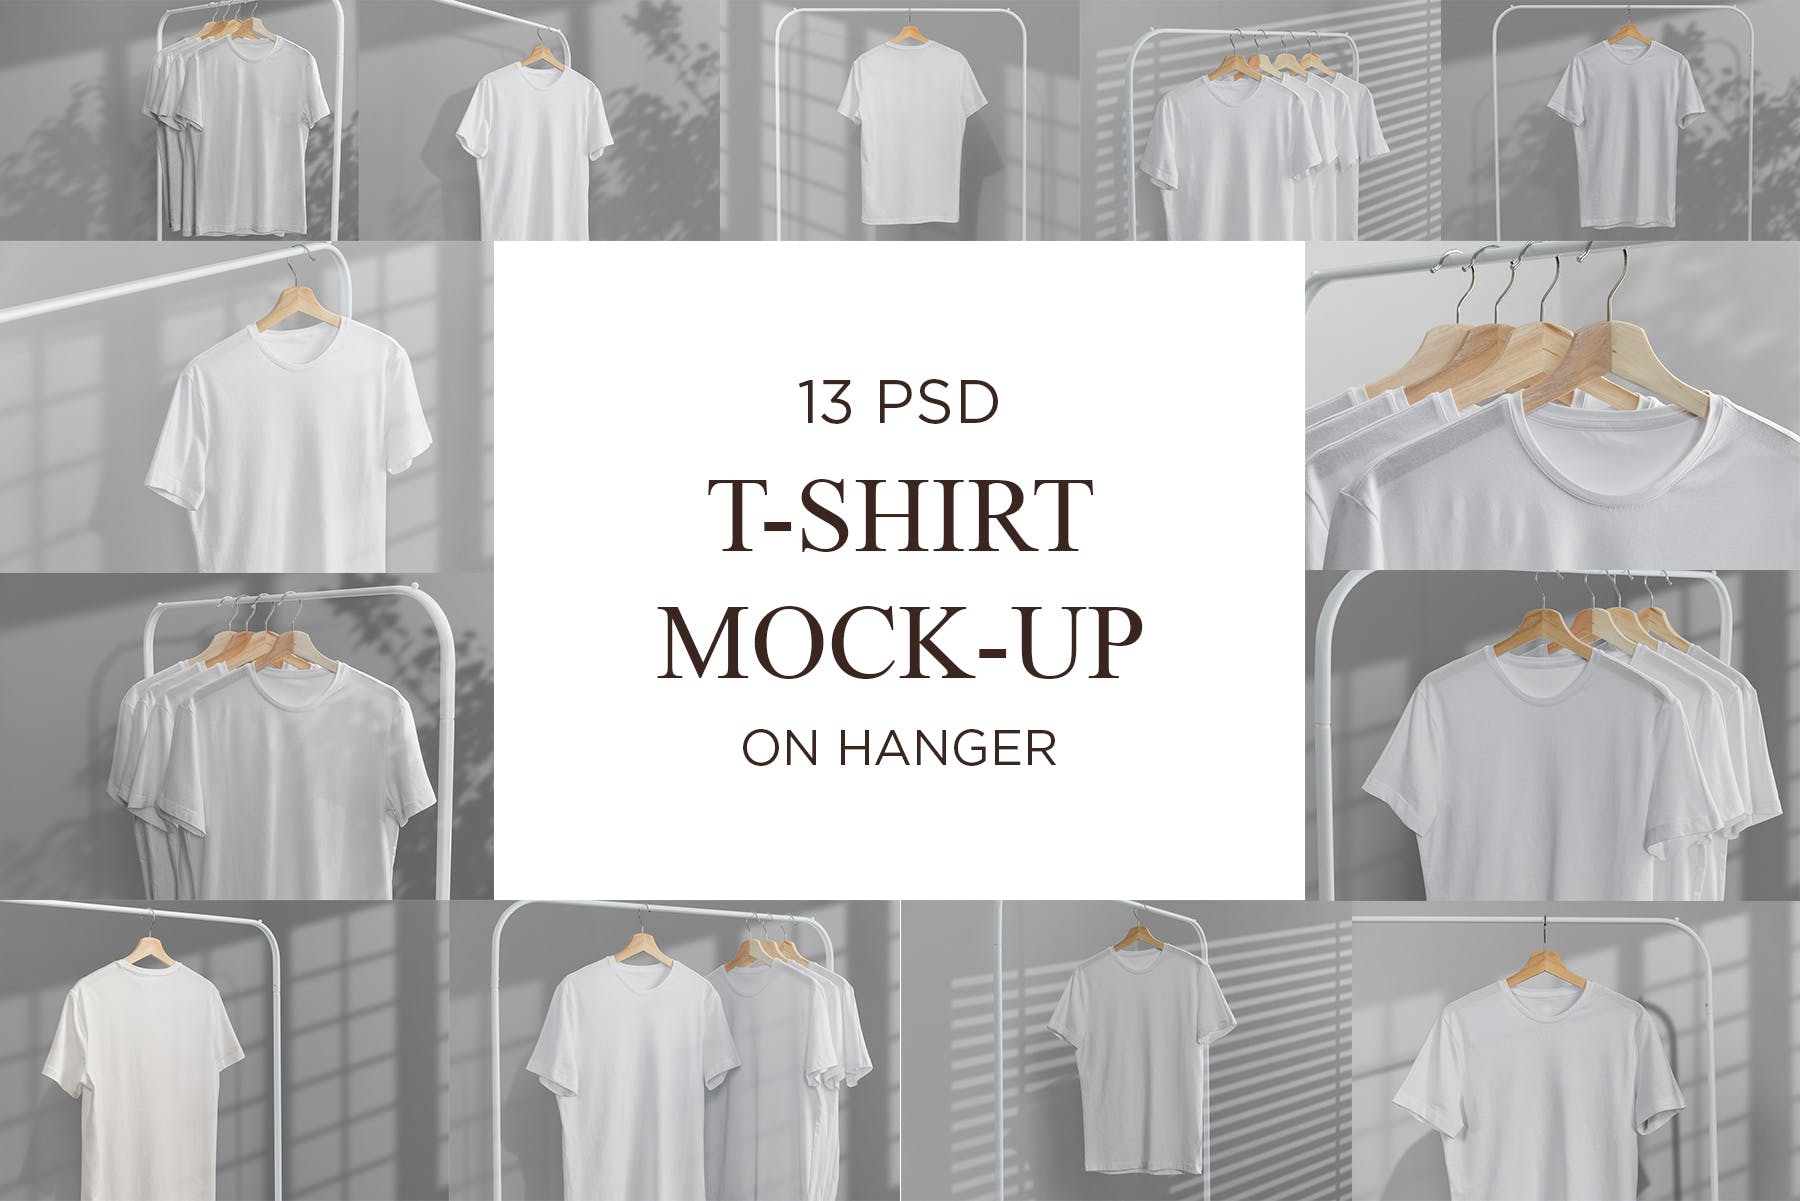 简易晾衣架T恤设计效果图样机非凡图库精选 T-Shirt Mock-Up on Hanger插图(8)